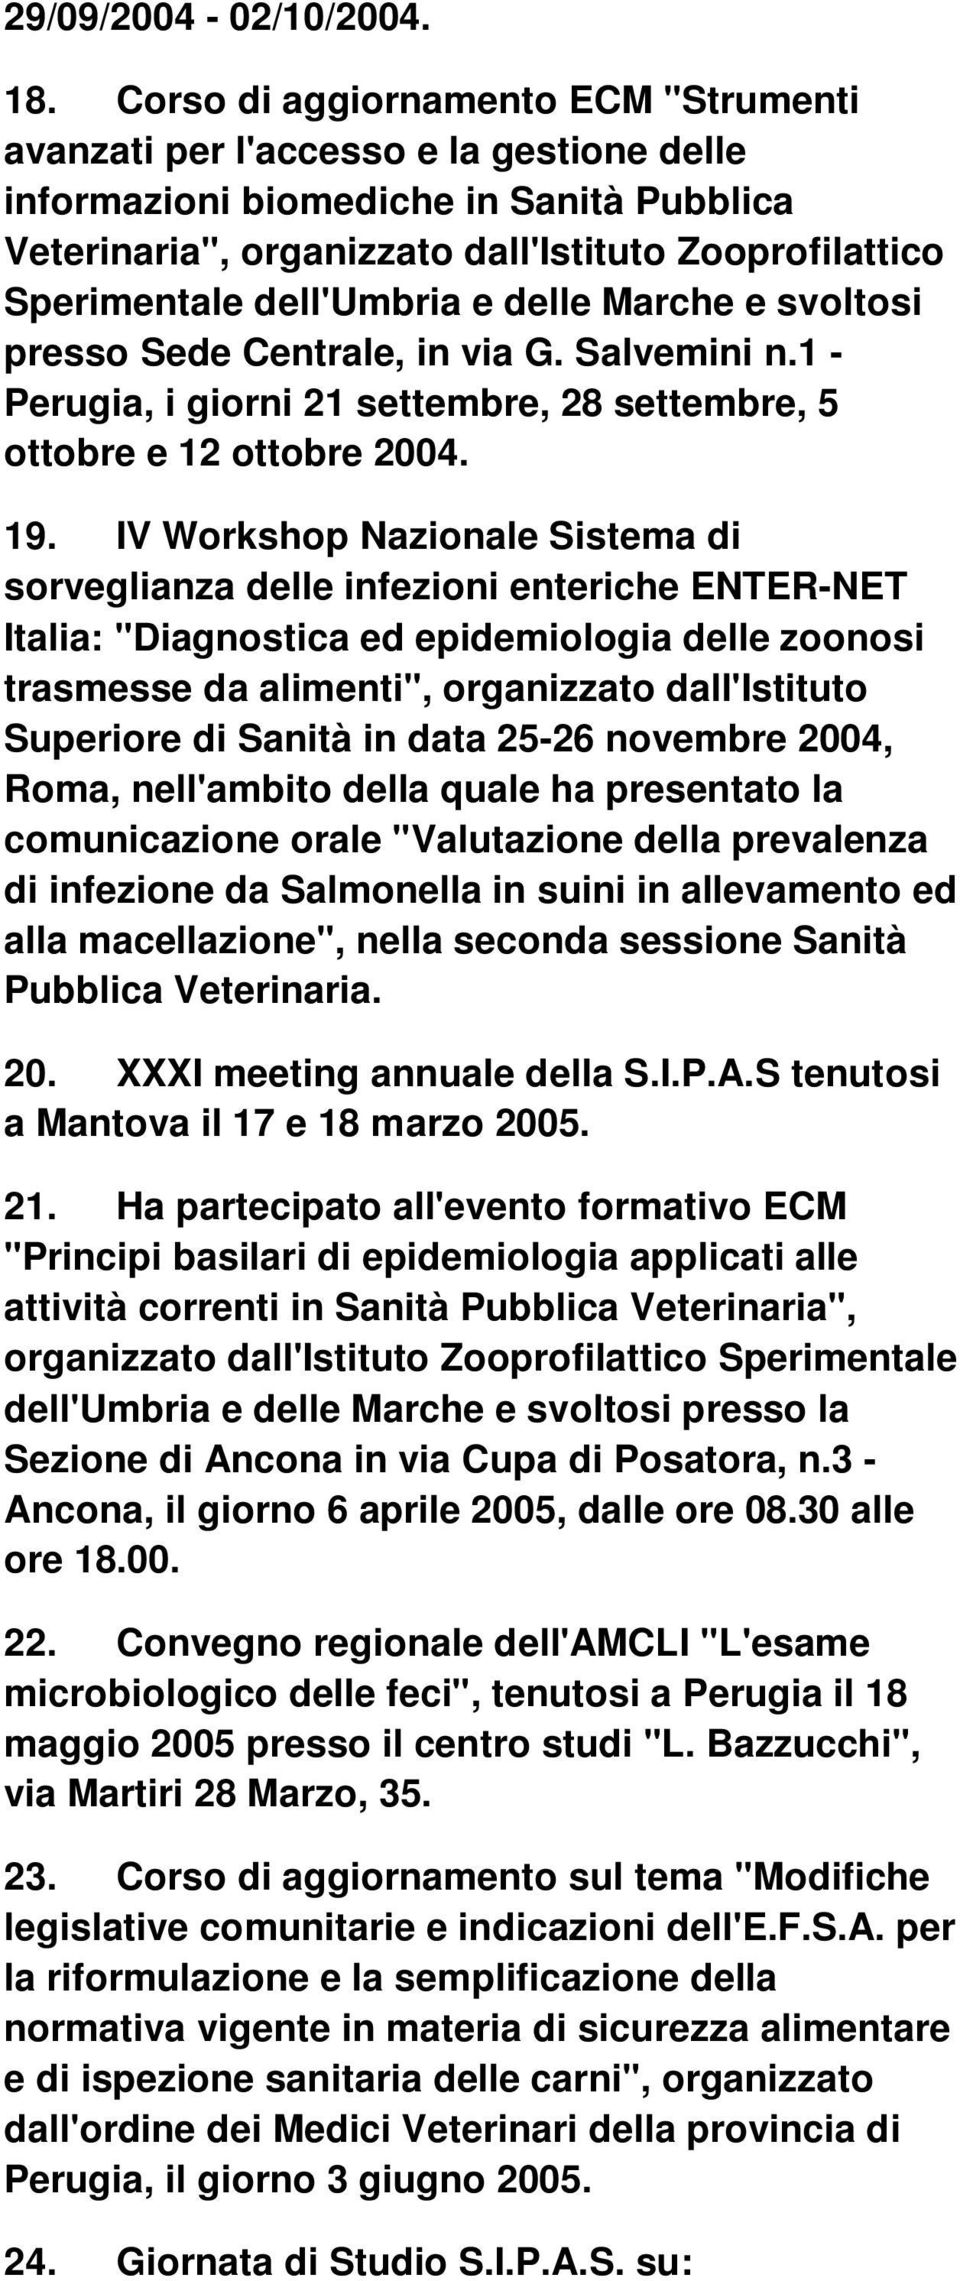 dell'umbria e delle Marche e svoltosi presso Sede Centrale, in via G. Salvemini n.1 - Perugia, i giorni 21 settembre, 28 settembre, 5 ottobre e 12 ottobre 2004. 19.